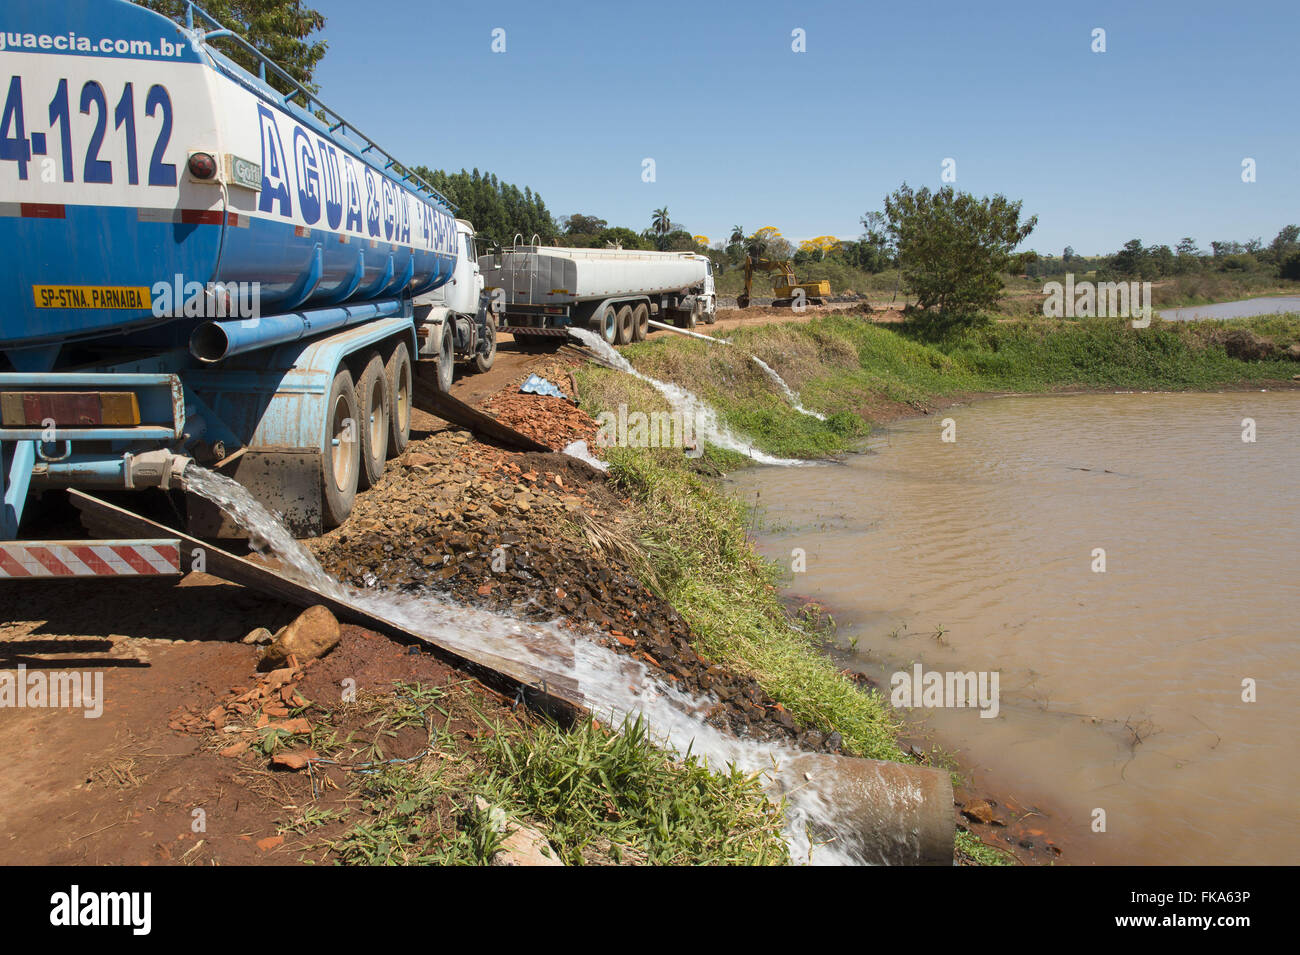 Réservoir chariot fournissant de l'eau à la ville réservoir qui a séché à cause de la sécheresse Banque D'Images